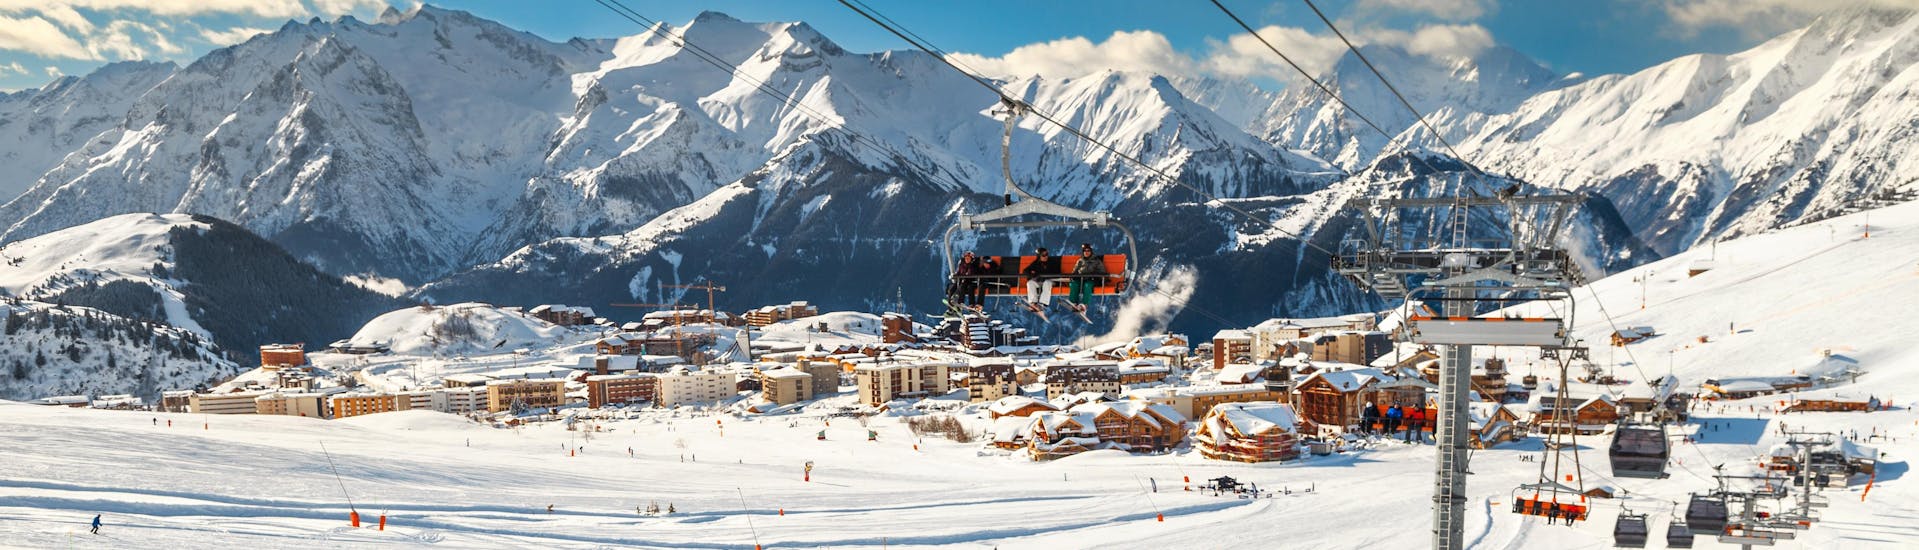 Un skieur fait une pause pendant son cours de ski pour profiter de la vue sur la station de l'Alpe d'Huez depuis les pistes.